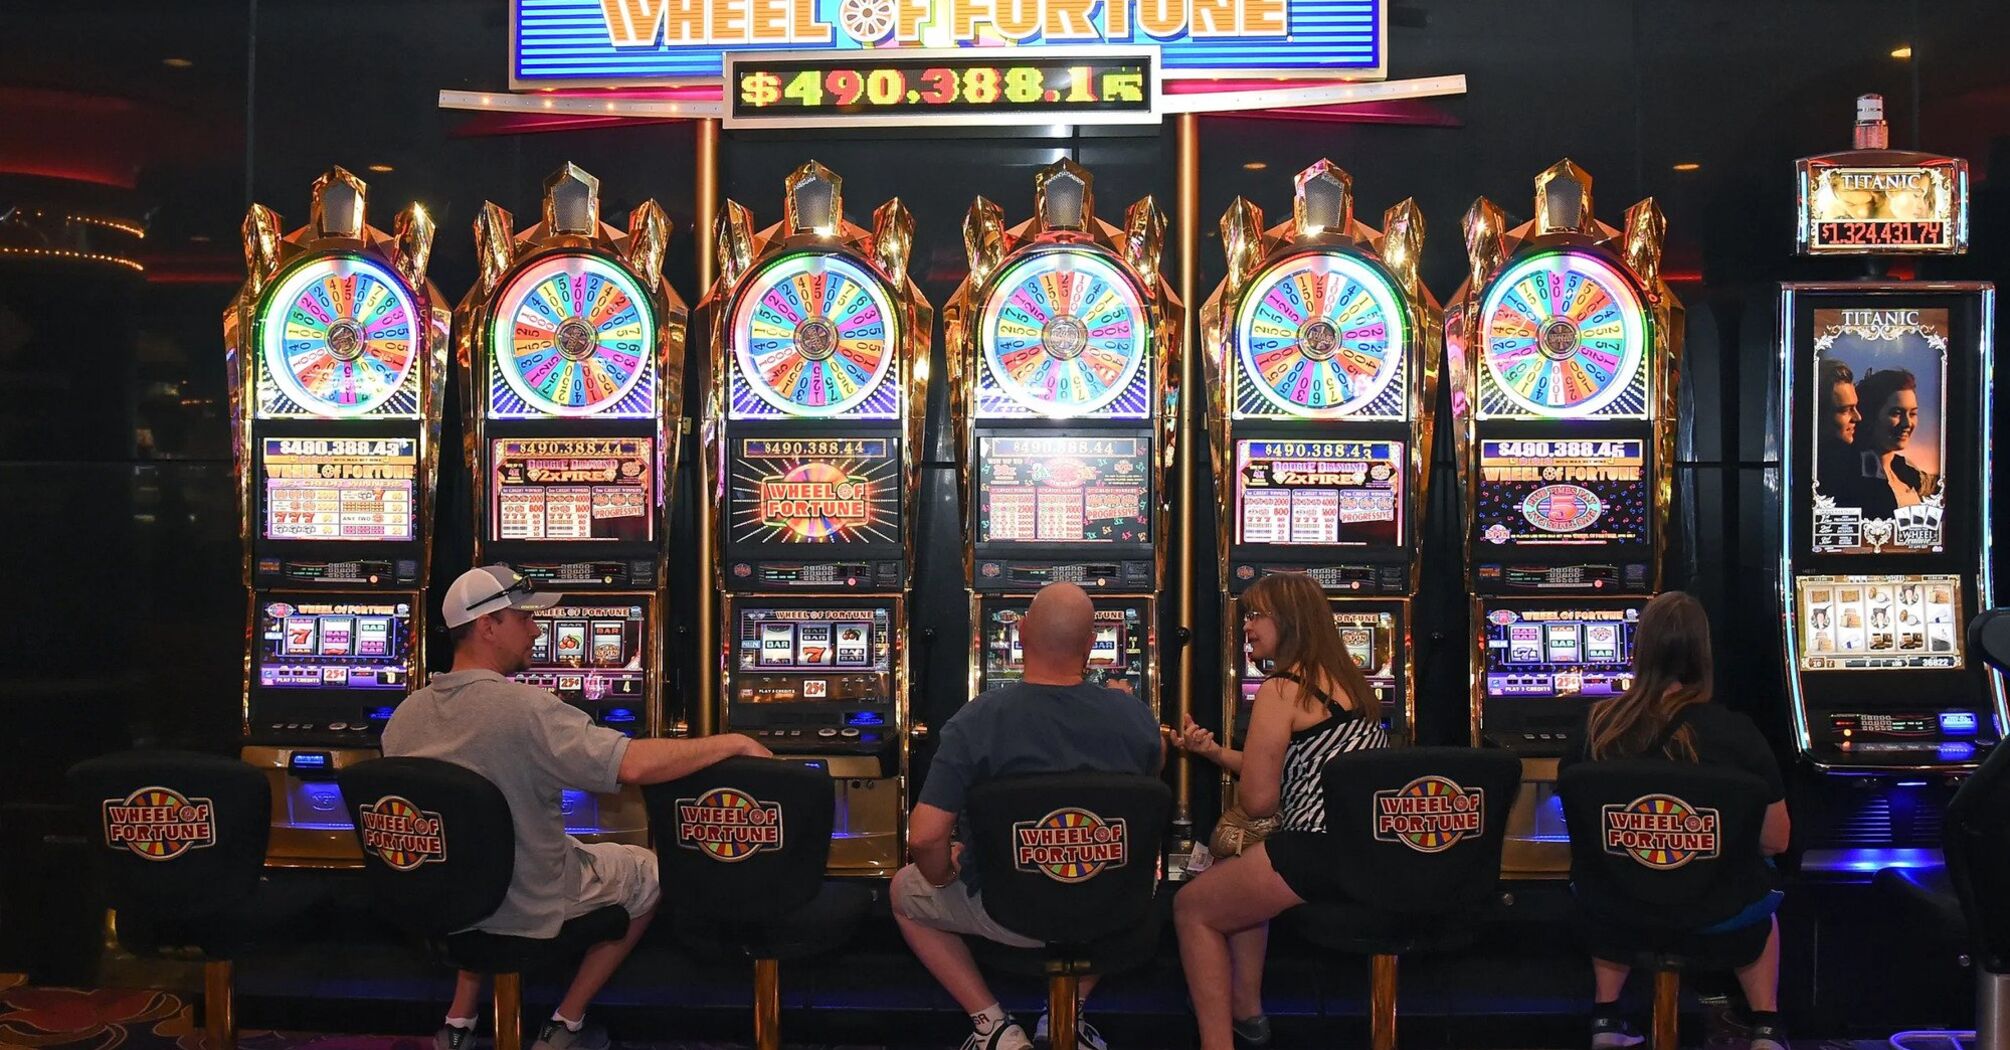 Player hits $348 thousand jackpot at Las Vegas airport